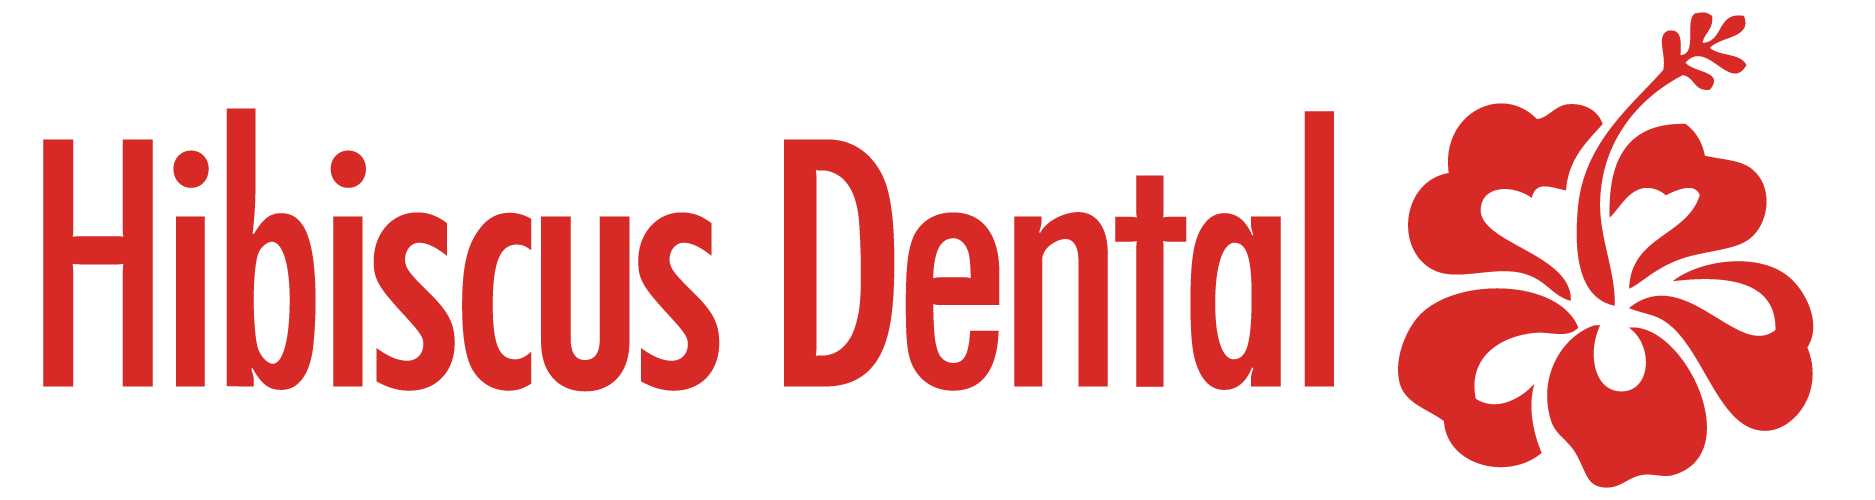 Hibiscus Dental Logo